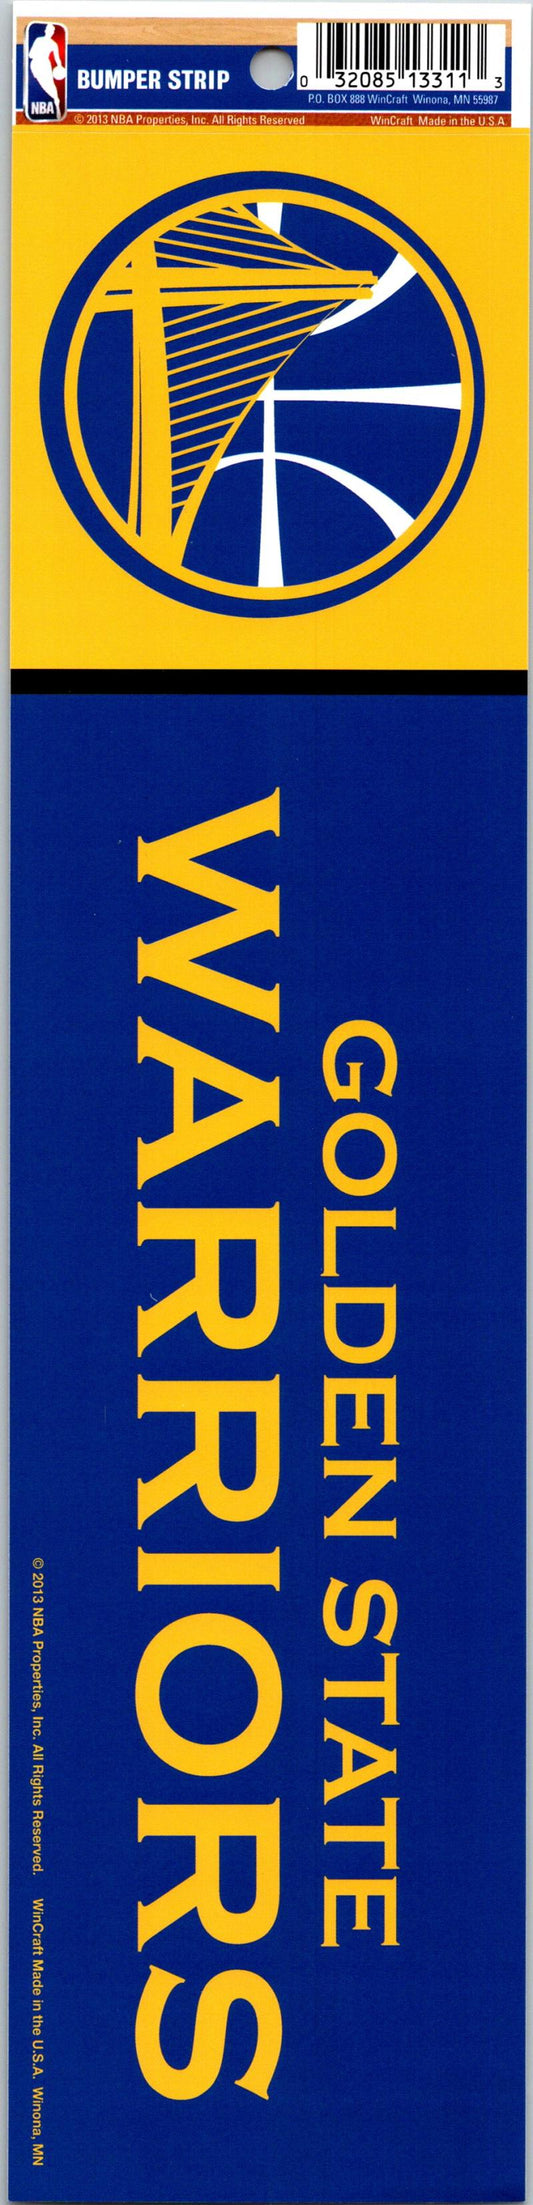 Golden State Warriors 3" x 12" Bumper Strip NBA Sticker Decal Image 1